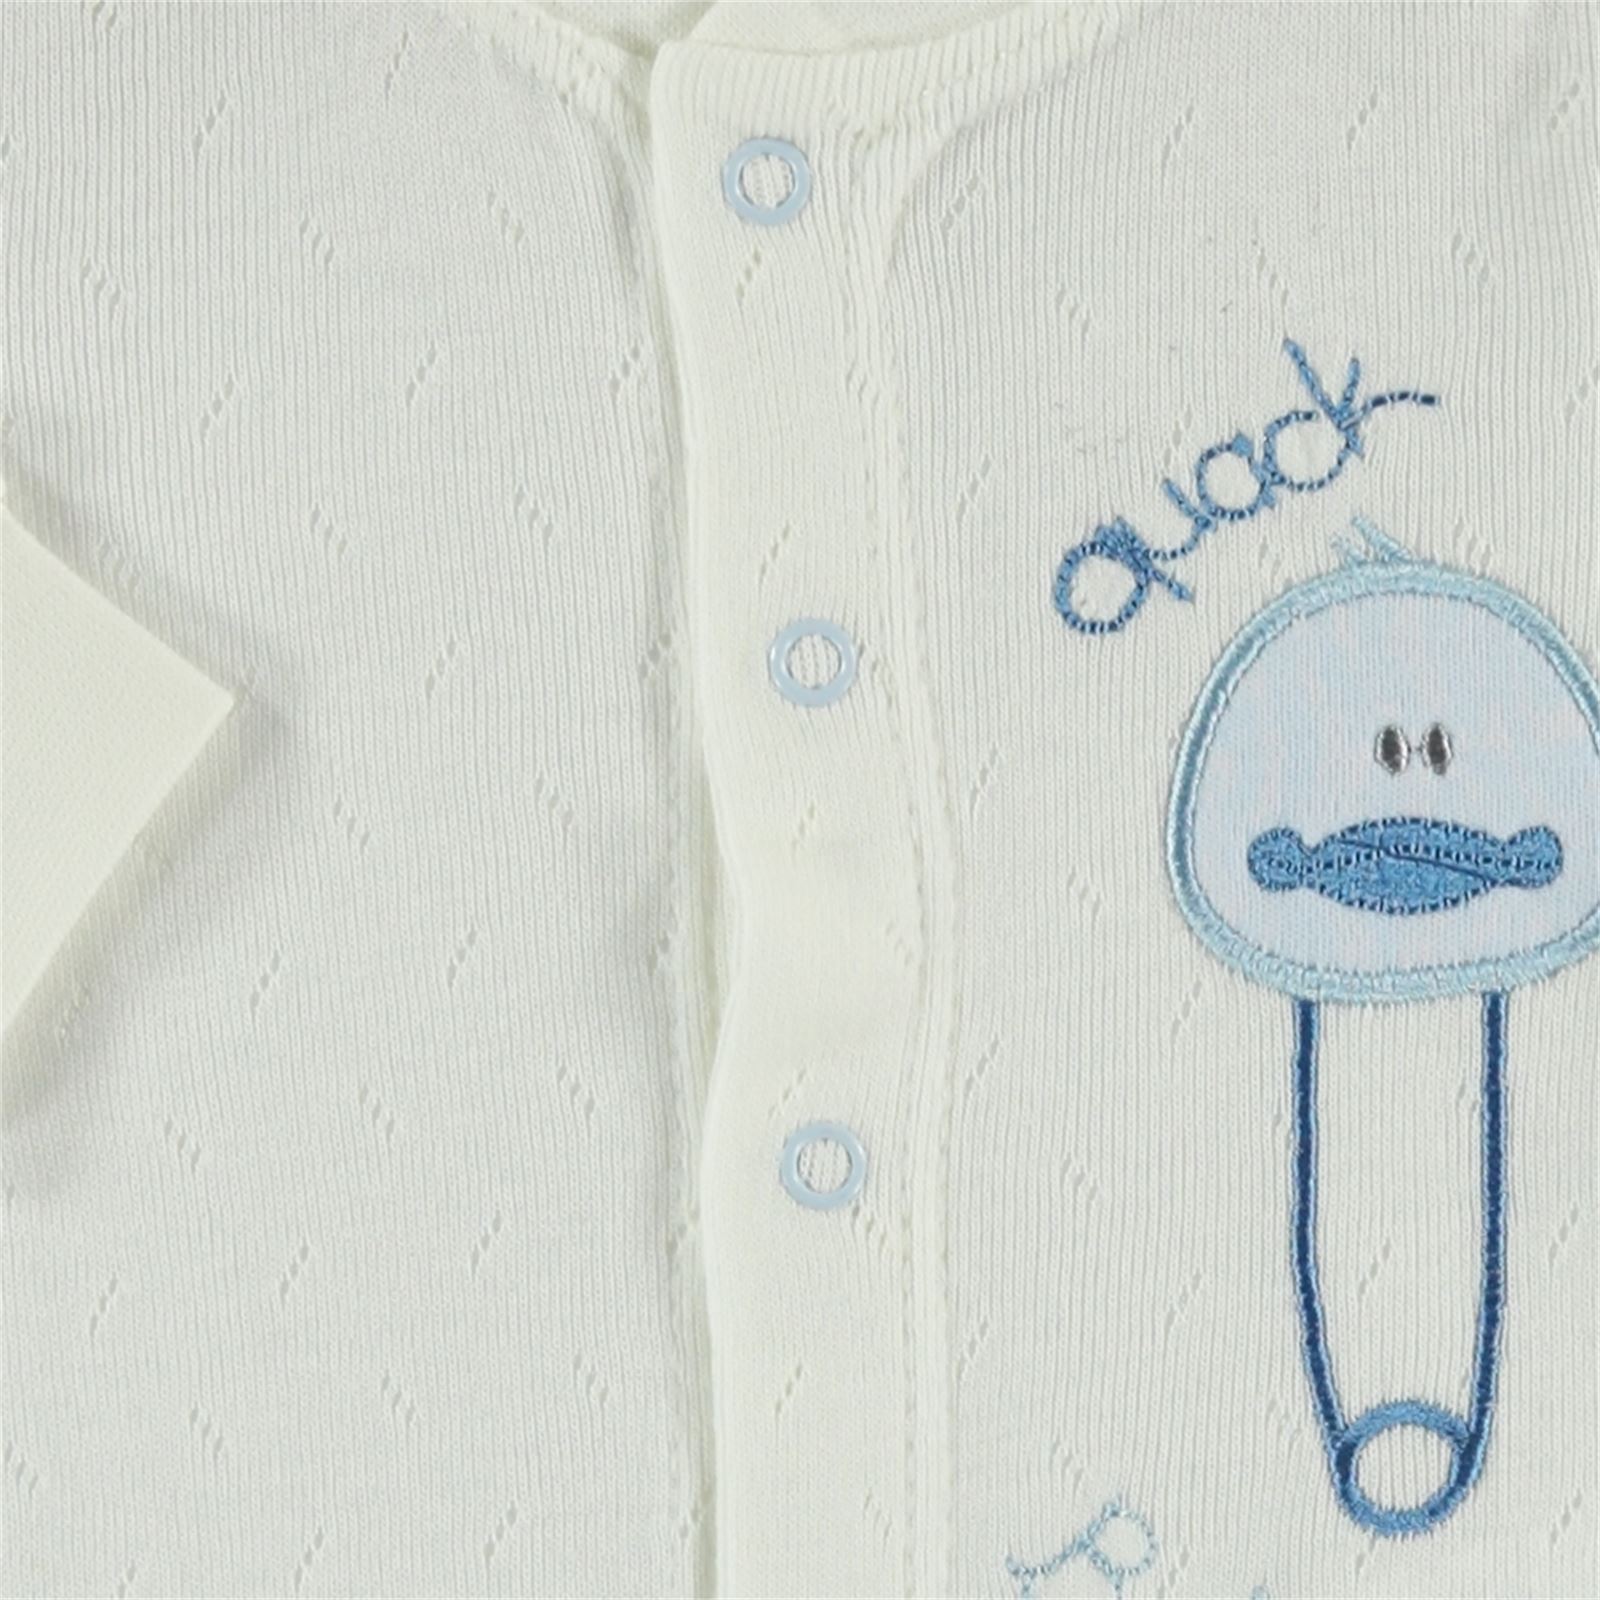 Civil Baby Bebek Pijama Takımı 0-6 Ay Mavi